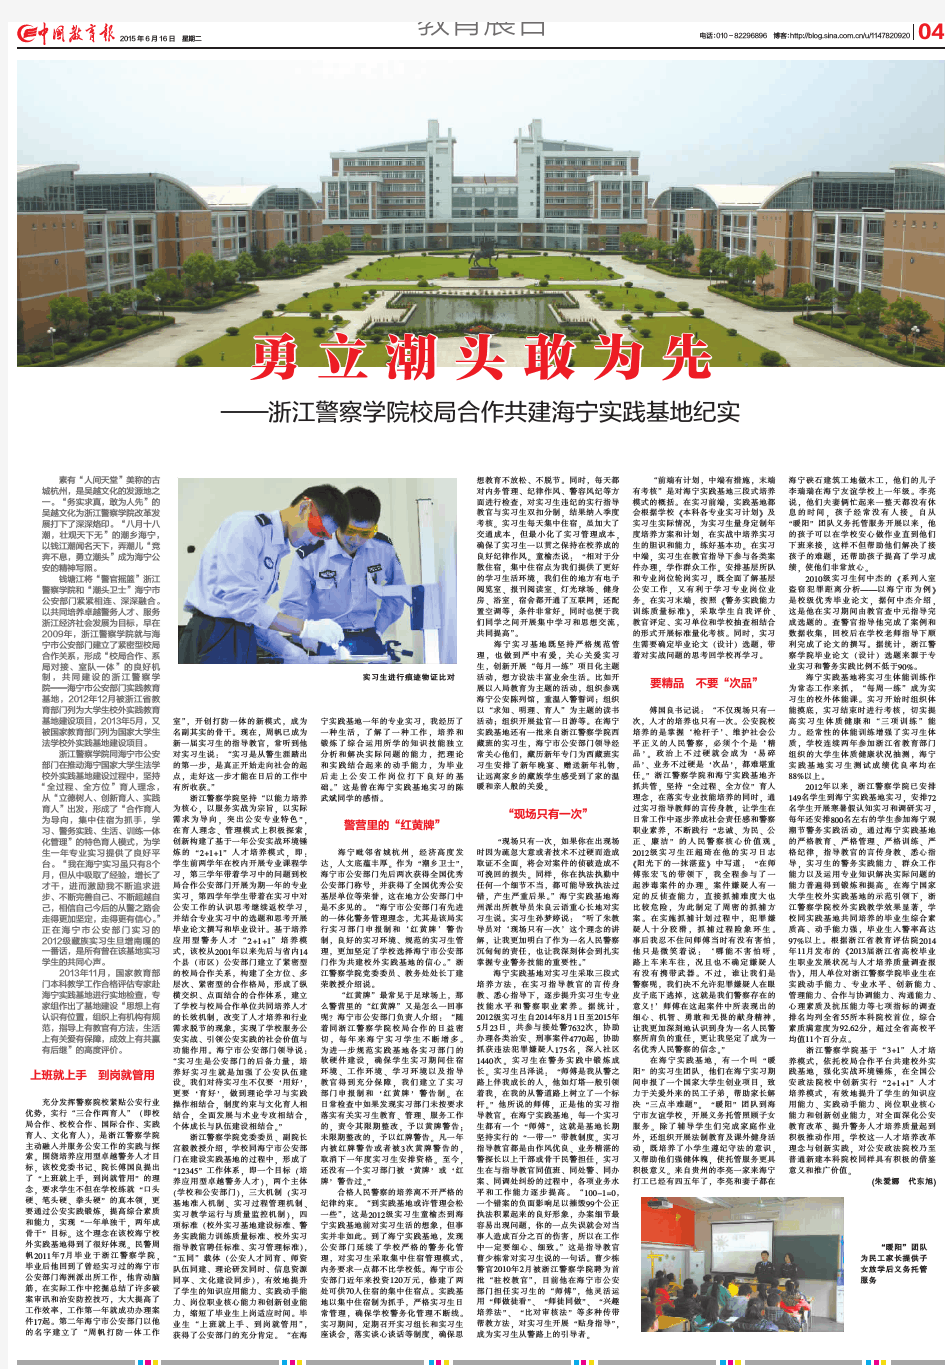 勇 立 潮 头 敢 为 先 - 《中国教育报》电子版 - 中国教育新 …